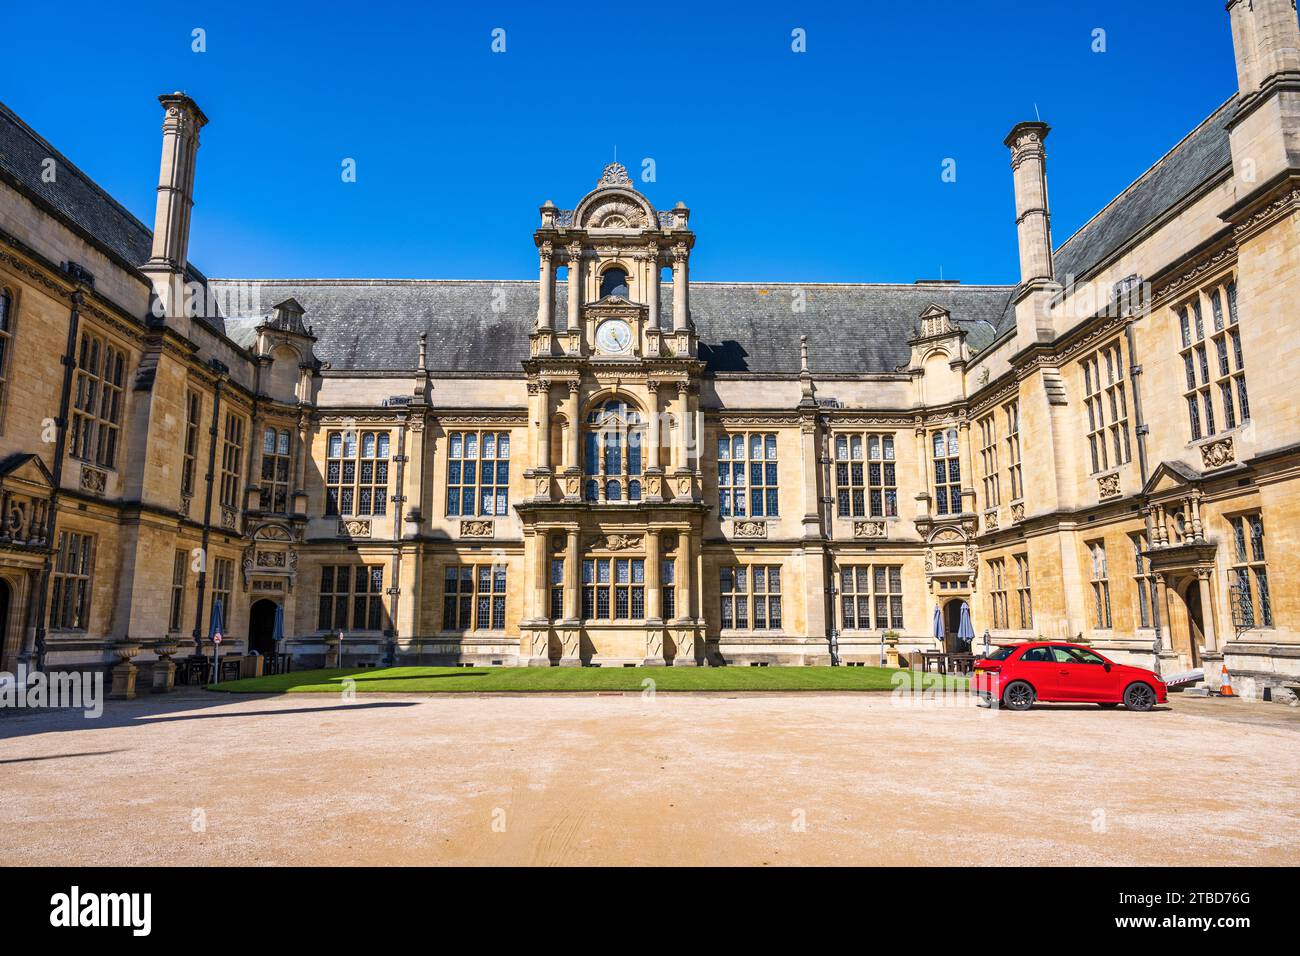 Quadrangle des écoles d'examen de l'Université d'Oxford sur Merton Street dans le centre-ville d'Oxford, Oxfordshire, Angleterre, Royaume-Uni Banque D'Images